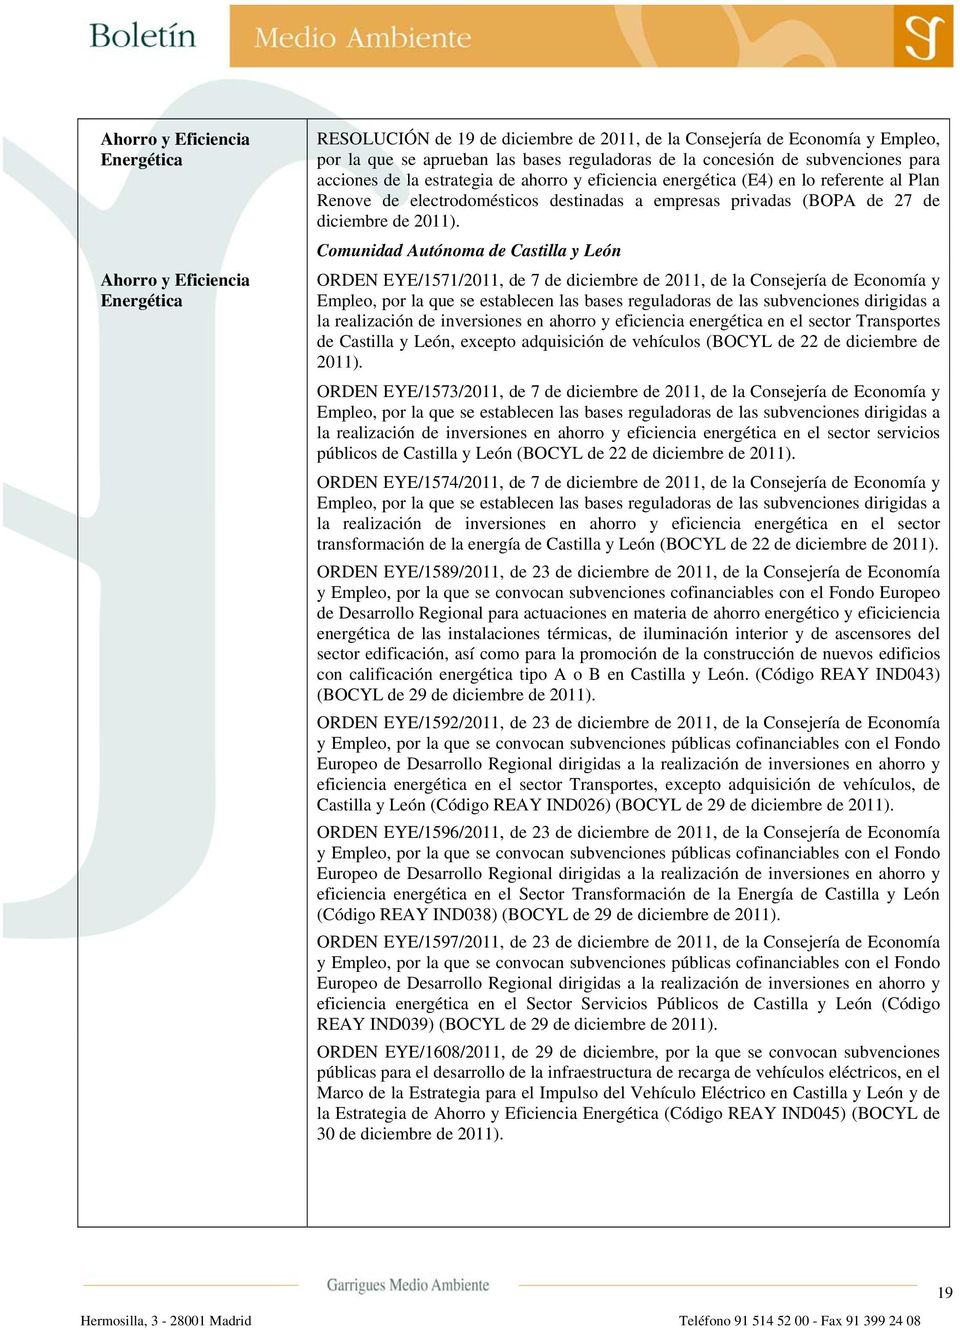 Comunidad Autónoma de Castilla y León ORDEN EYE/1571/2011, de 7 de diciembre de 2011, de la Consejería de Economía y Empleo, por la que se establecen las bases reguladoras de las subvenciones